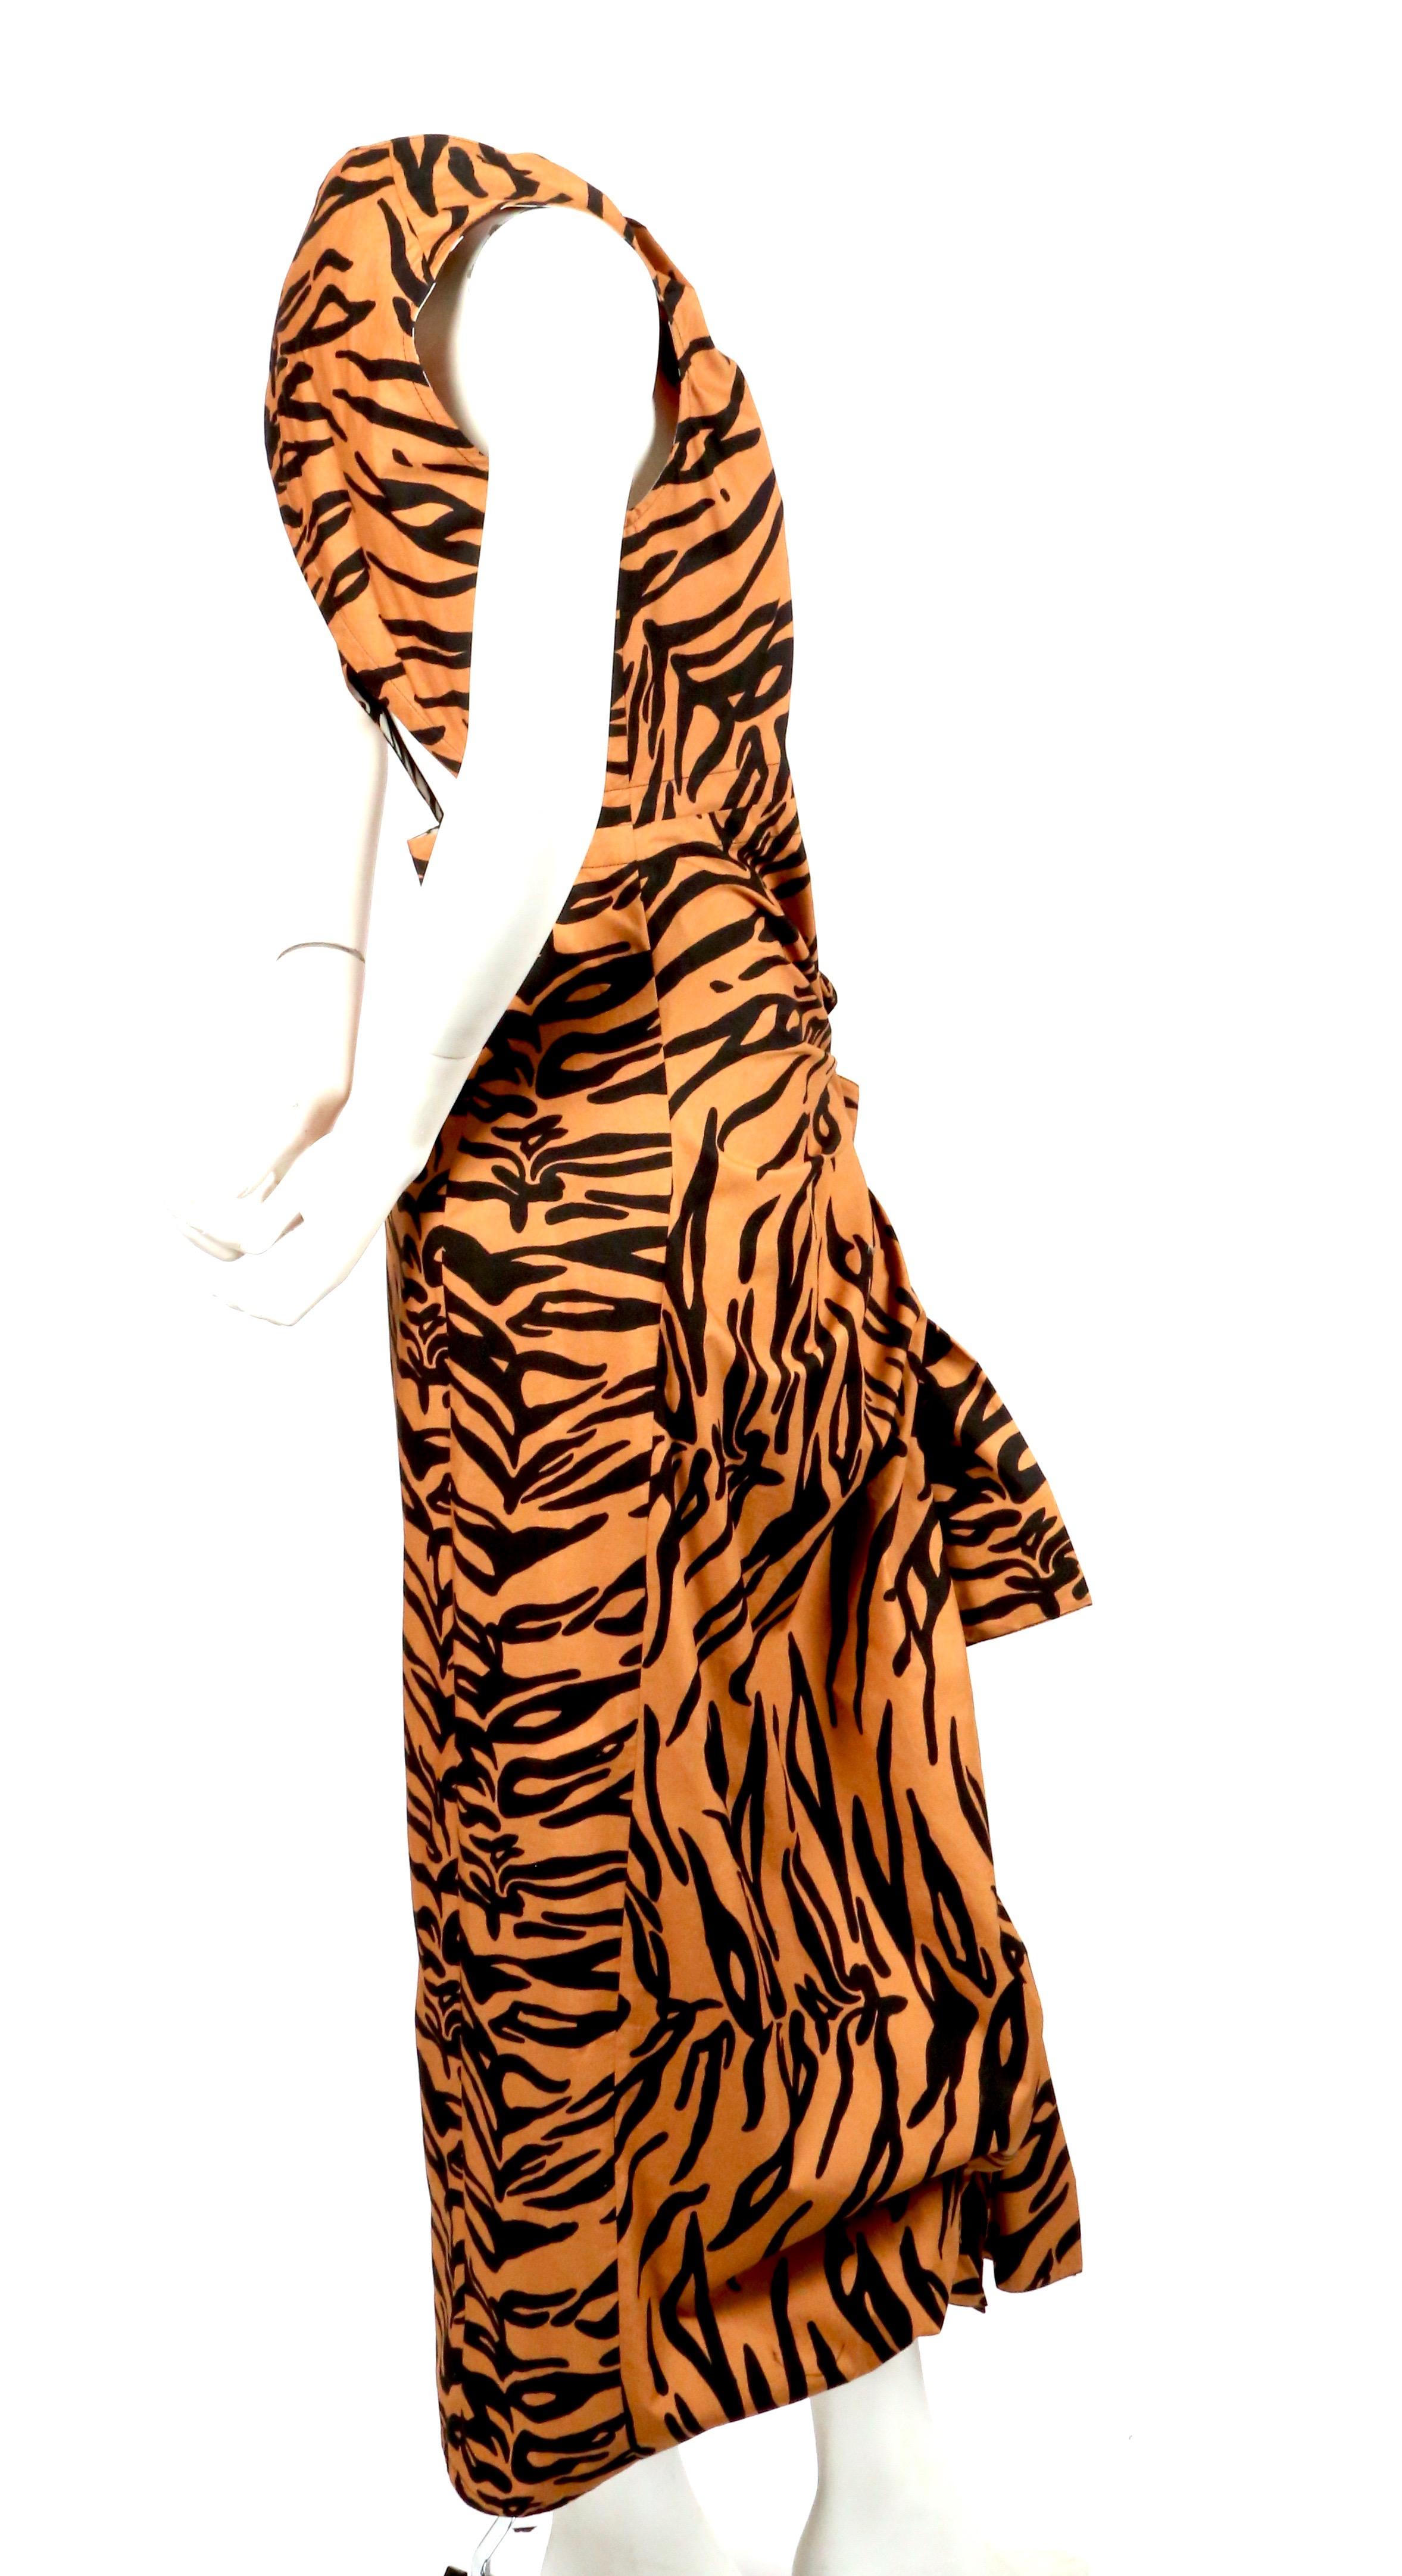 Baumwollkleid mit Tigerprint, drapierten Bändern und offenem Rücken, entworfen von Phoebe Philo für Celine. Das Kleid ist mit der französischen Größe 38 gekennzeichnet. Messungen sind sehr schwierig für dieses Stück zu nehmen, aber es war nicht auf